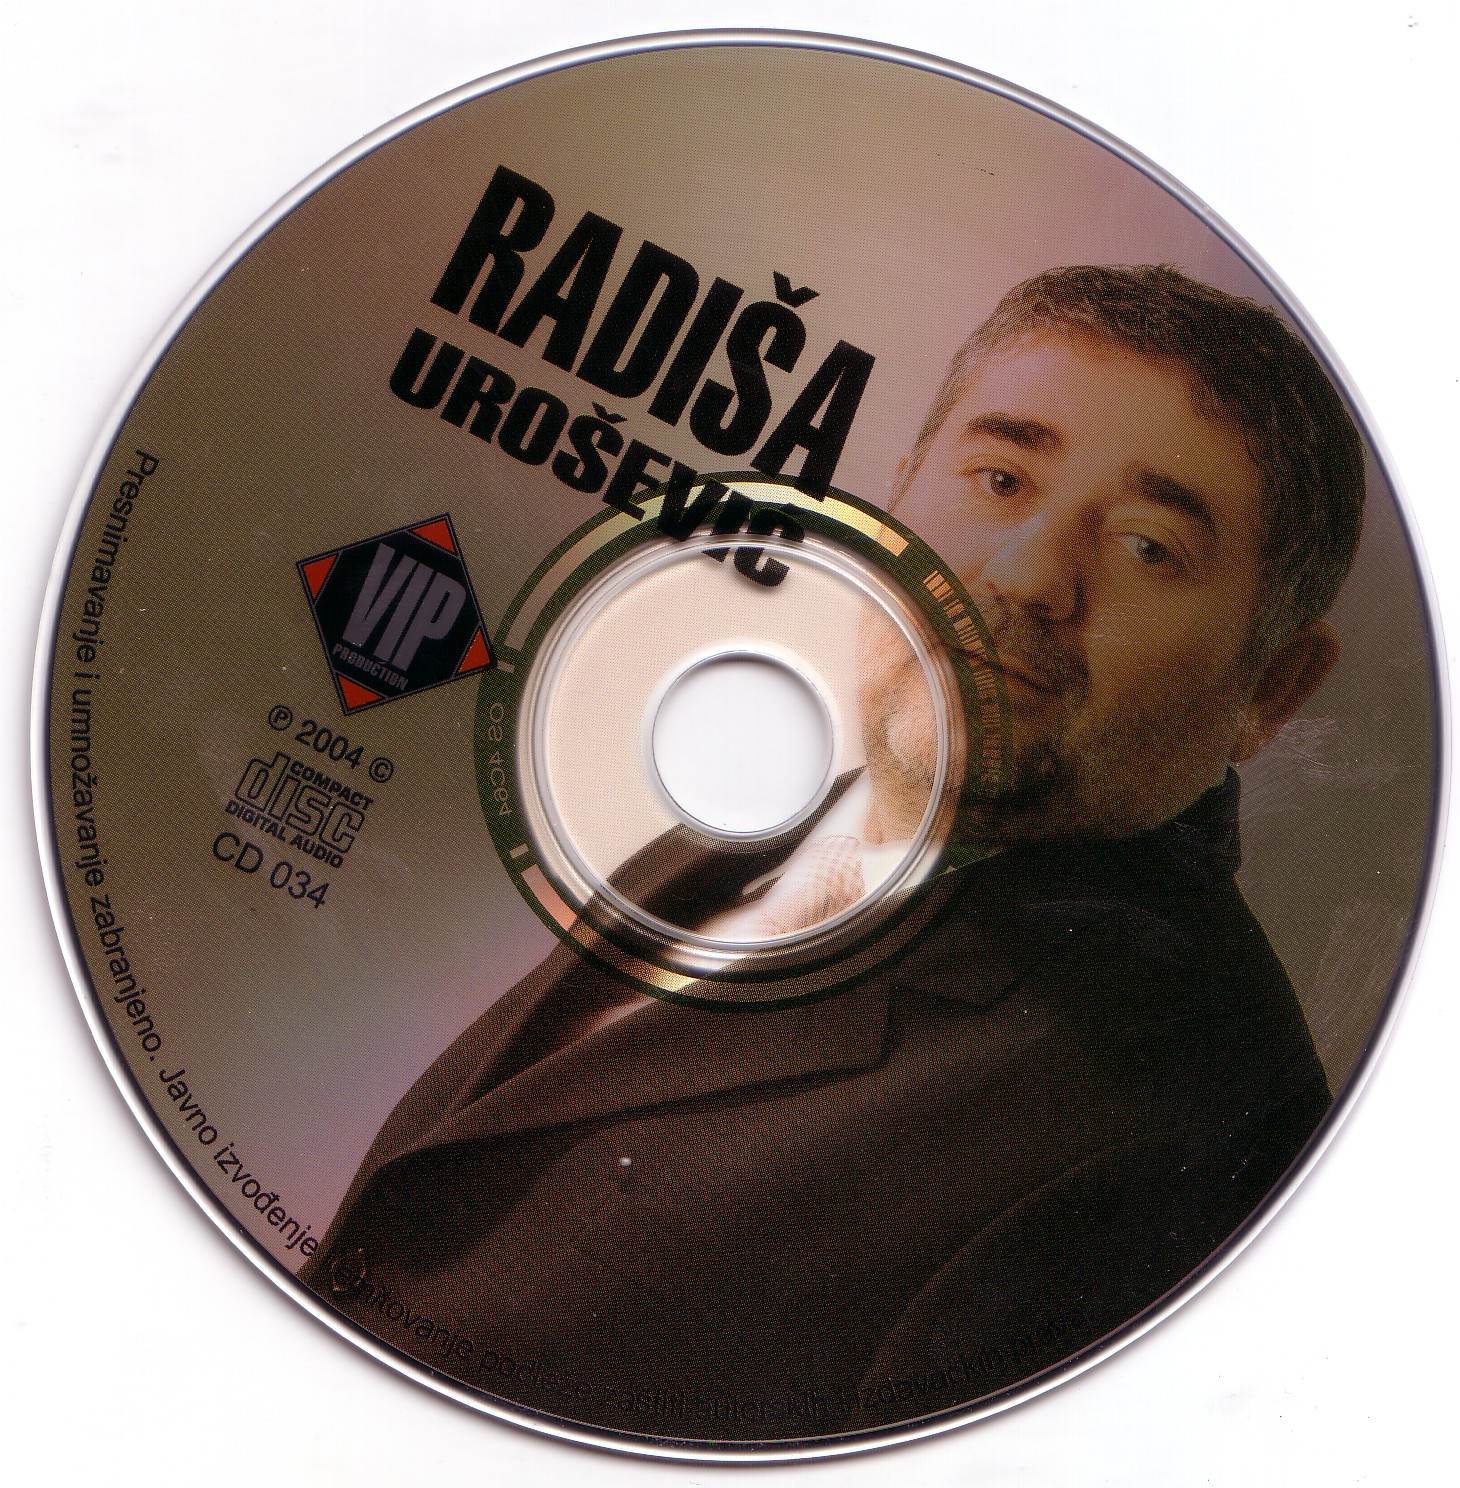 Radisa Urosevic 2005 CD